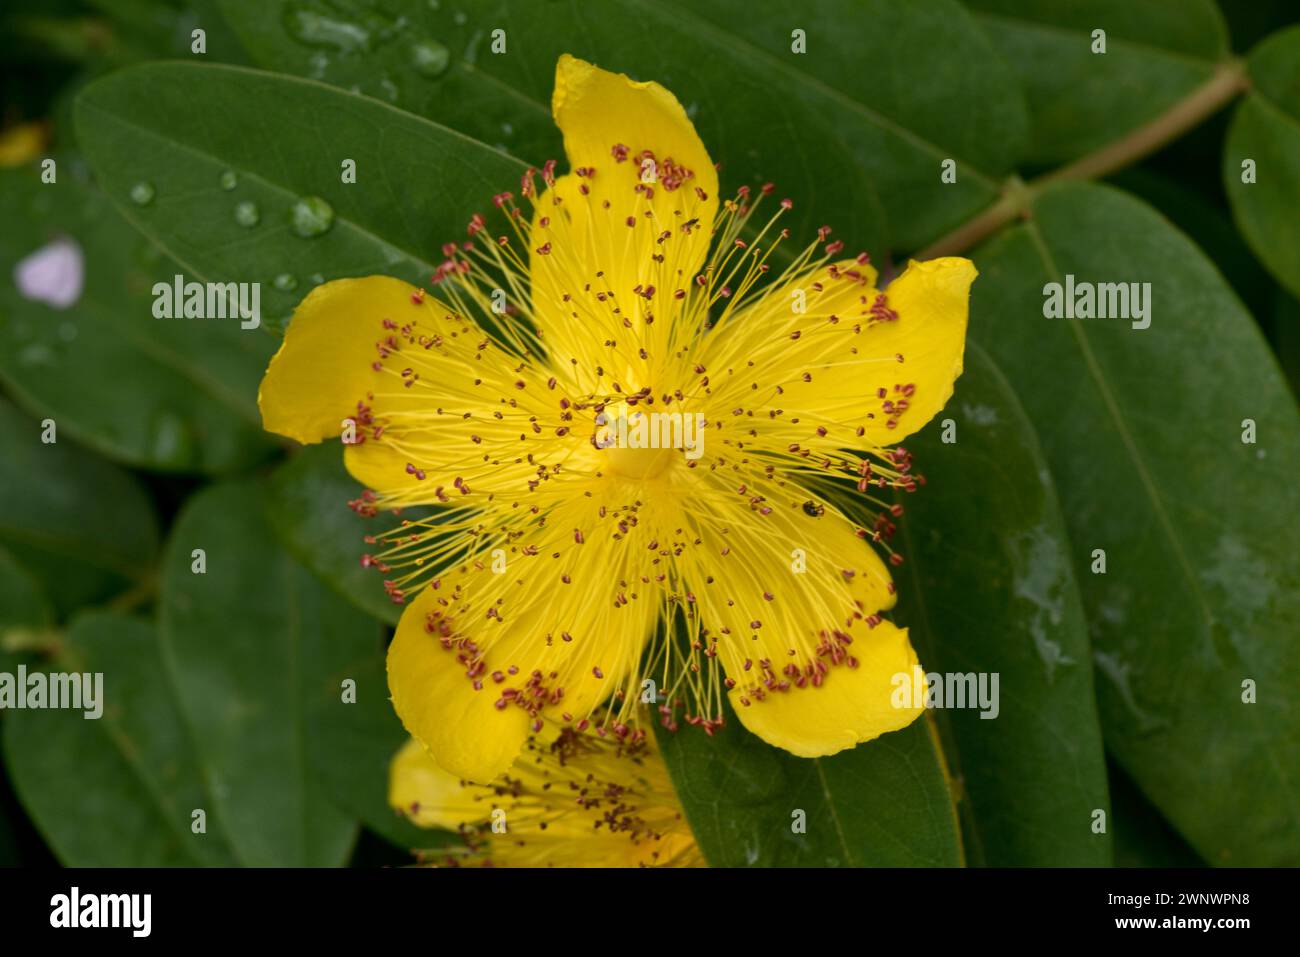 Rosa di Sharon (Hypericum calycinum) prostrato, arbusto a bassa crescita con fiore giallo con numerosi stami gialli e anterie rosse, giugno Foto Stock